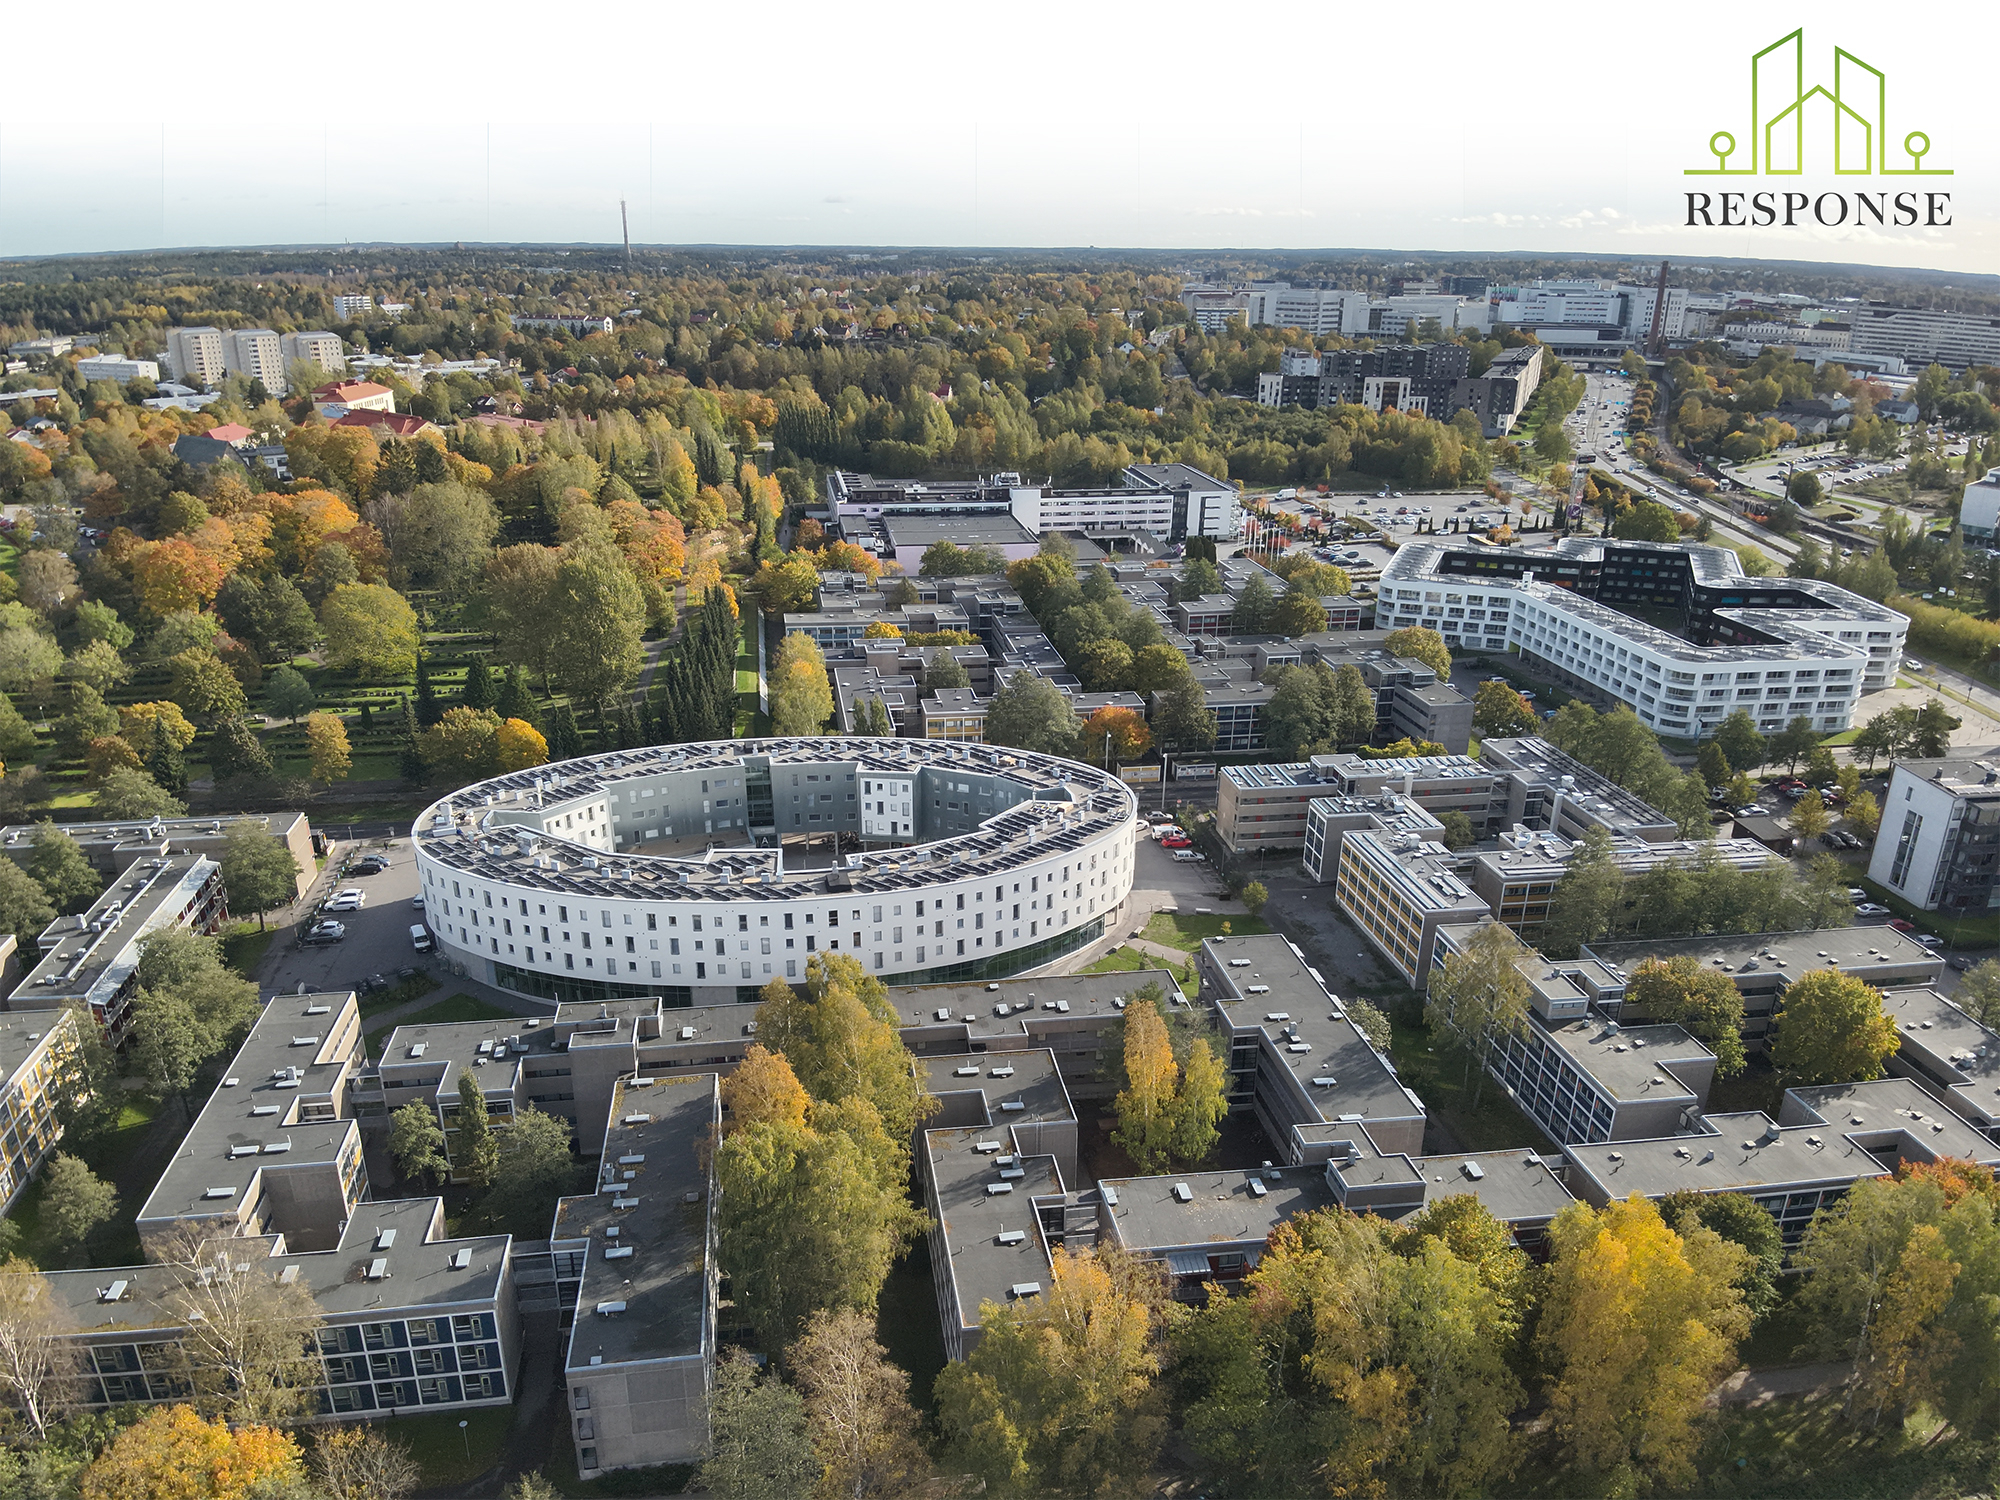 핀란드 투르쿠는 에너지 효율을 높이는 포지티브 에너지 지역(PED)을 운영한다. 사진은 PED 시범 사업이 추진되는 기숙사 단지 모습. 투르쿠시 홈페이지 캡처